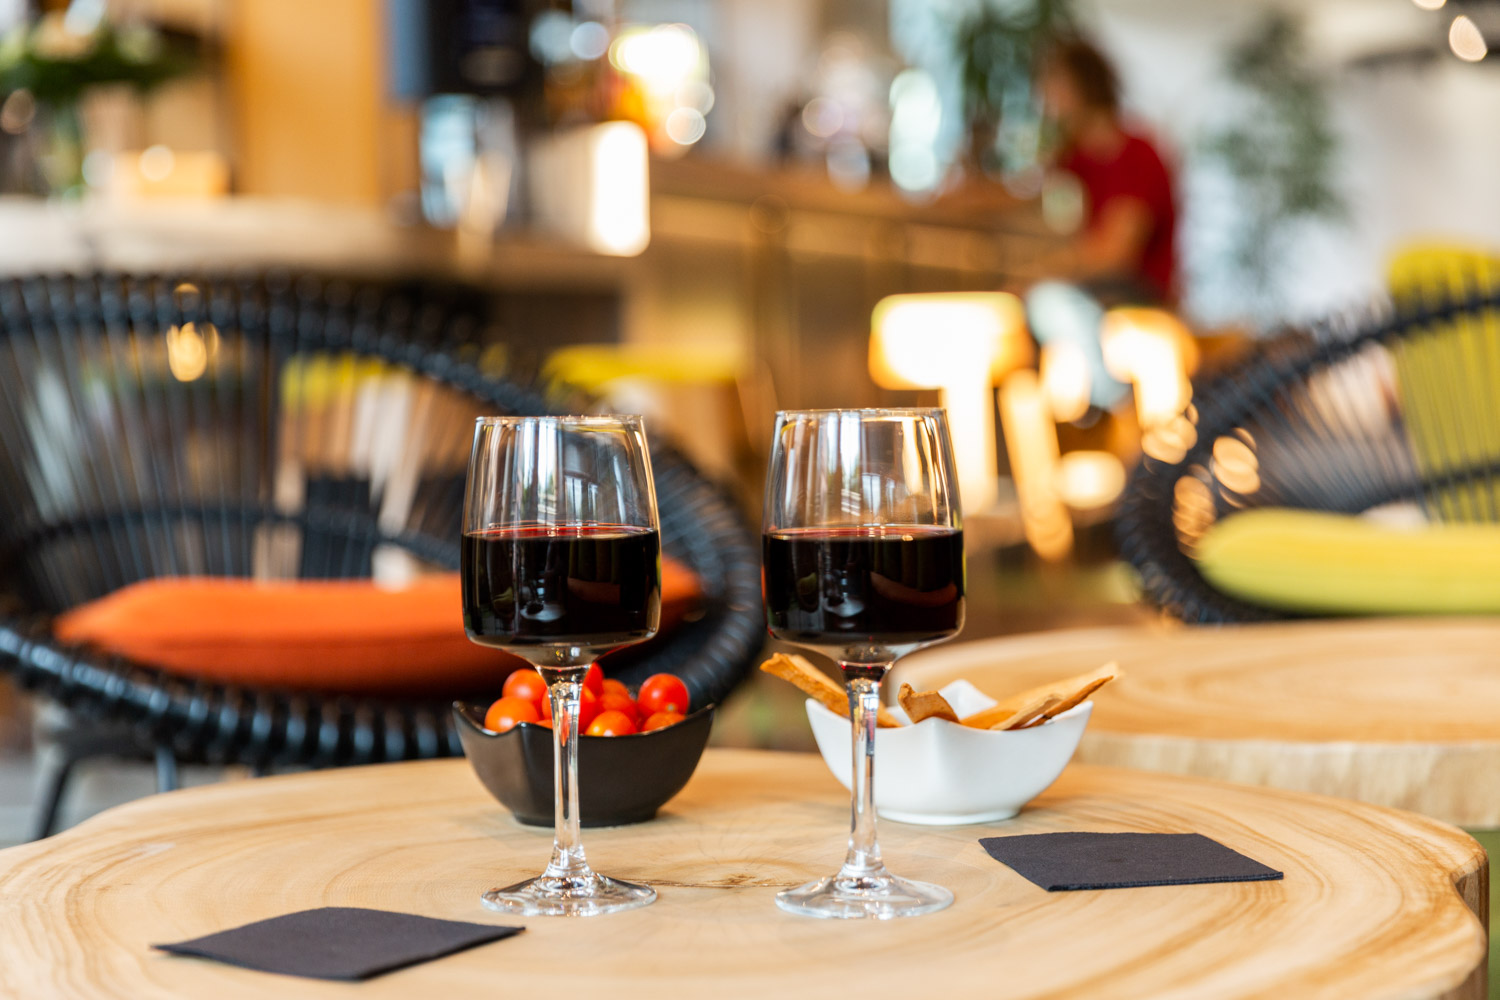 Mise en situation pour une photographie avec deux verres de vin mettant en scène le bar du restaurant